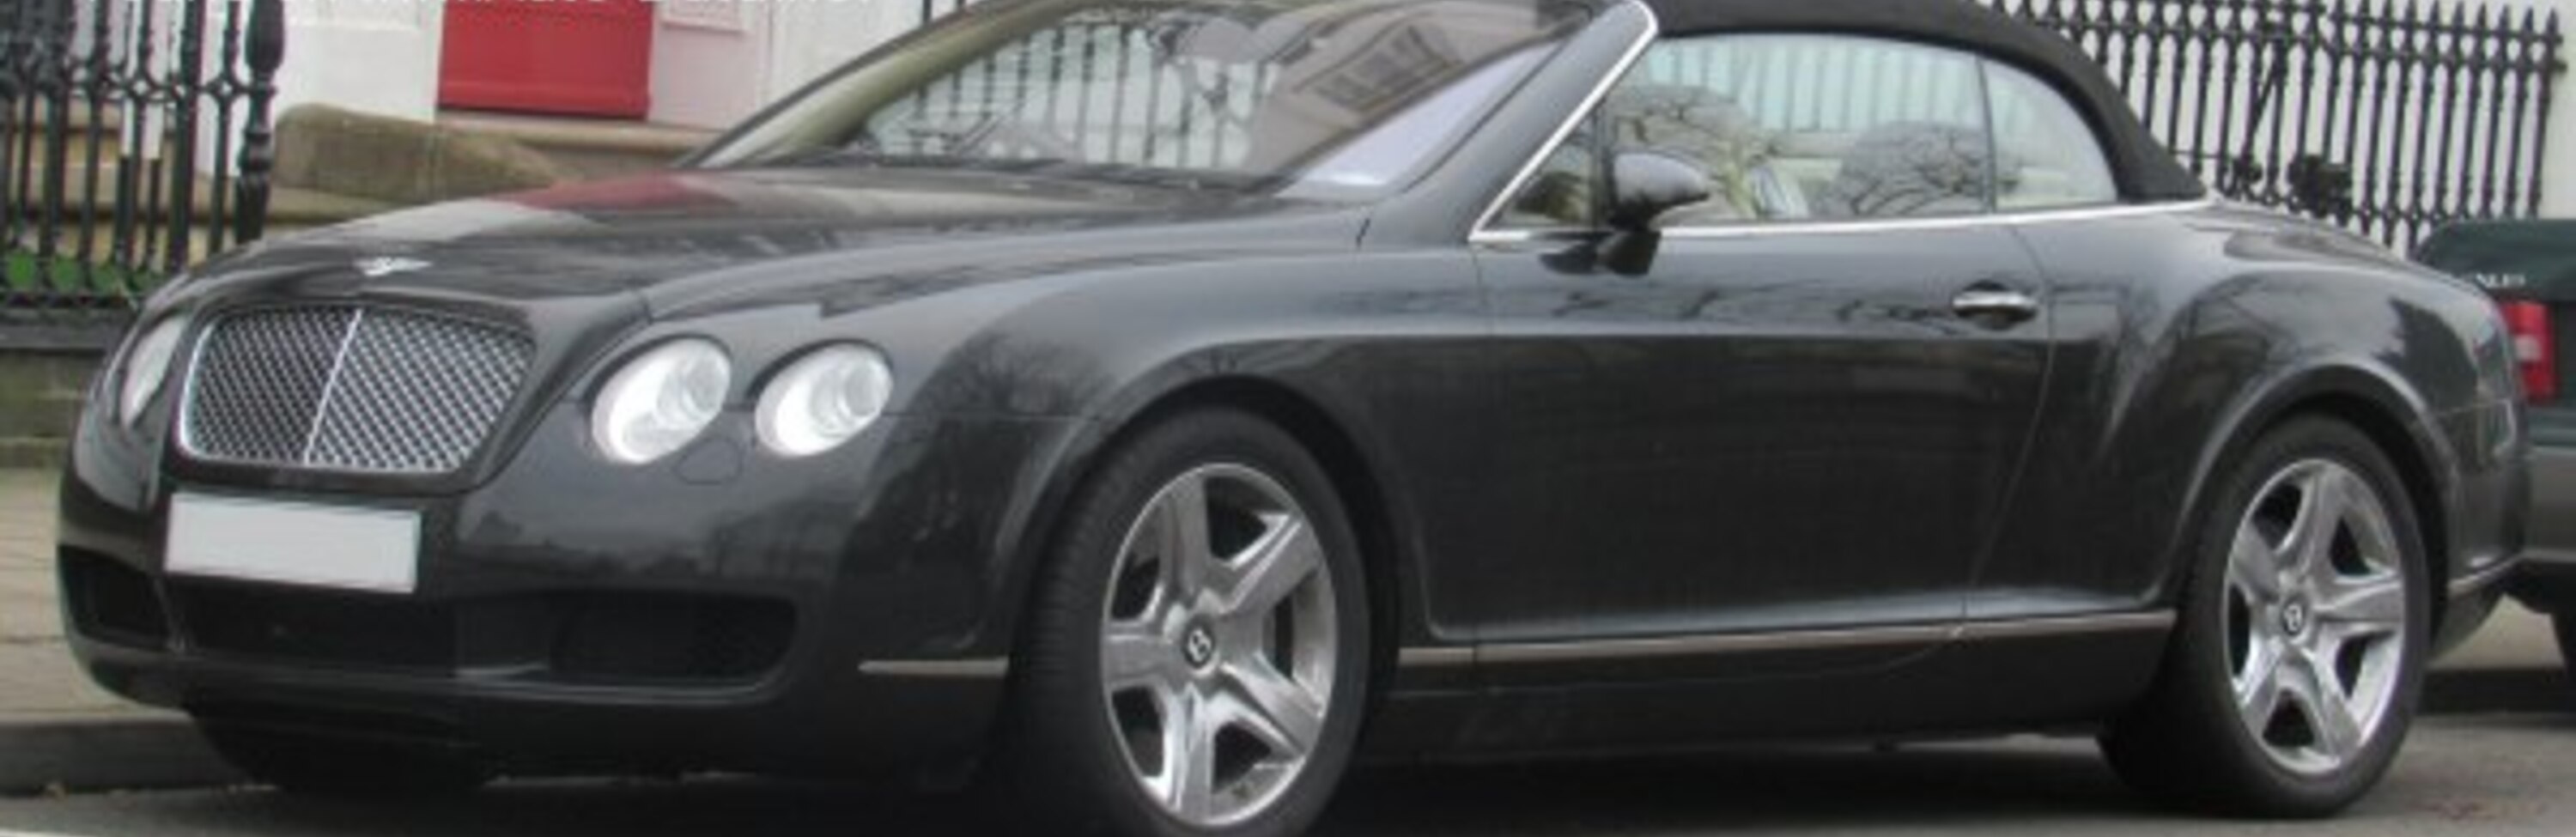 Bentley Continental GT convertible 6.0 i W12 48V (560 Hp) 2006, 2007, 2008, 2009, 2010 